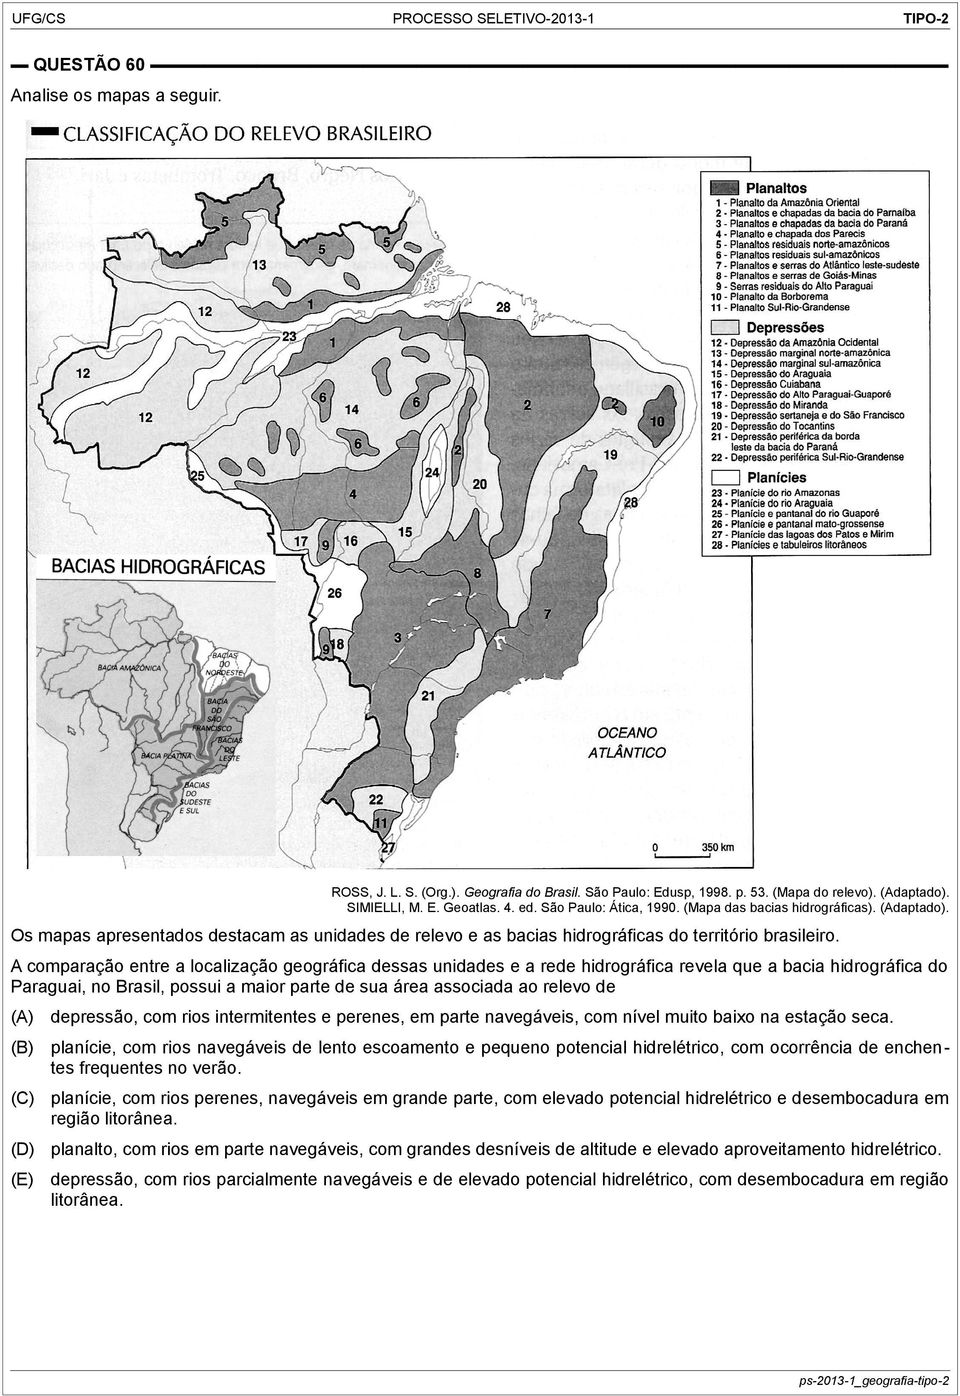 A comparação entre a localização geográfica dessas unidades e a rede hidrográfica revela que a bacia hidrográfica do Paraguai, no Brasil, possui a maior parte de sua área associada ao relevo de